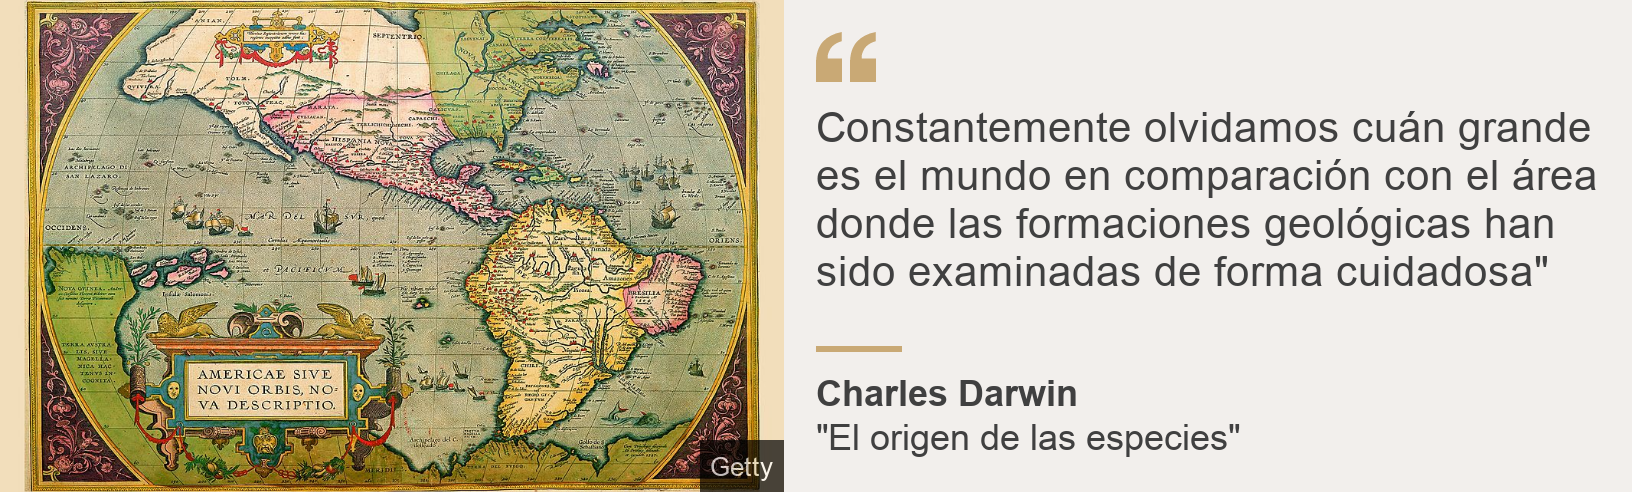 El Abominable Misterio Que Desconcerto A Charles Darwin Durante